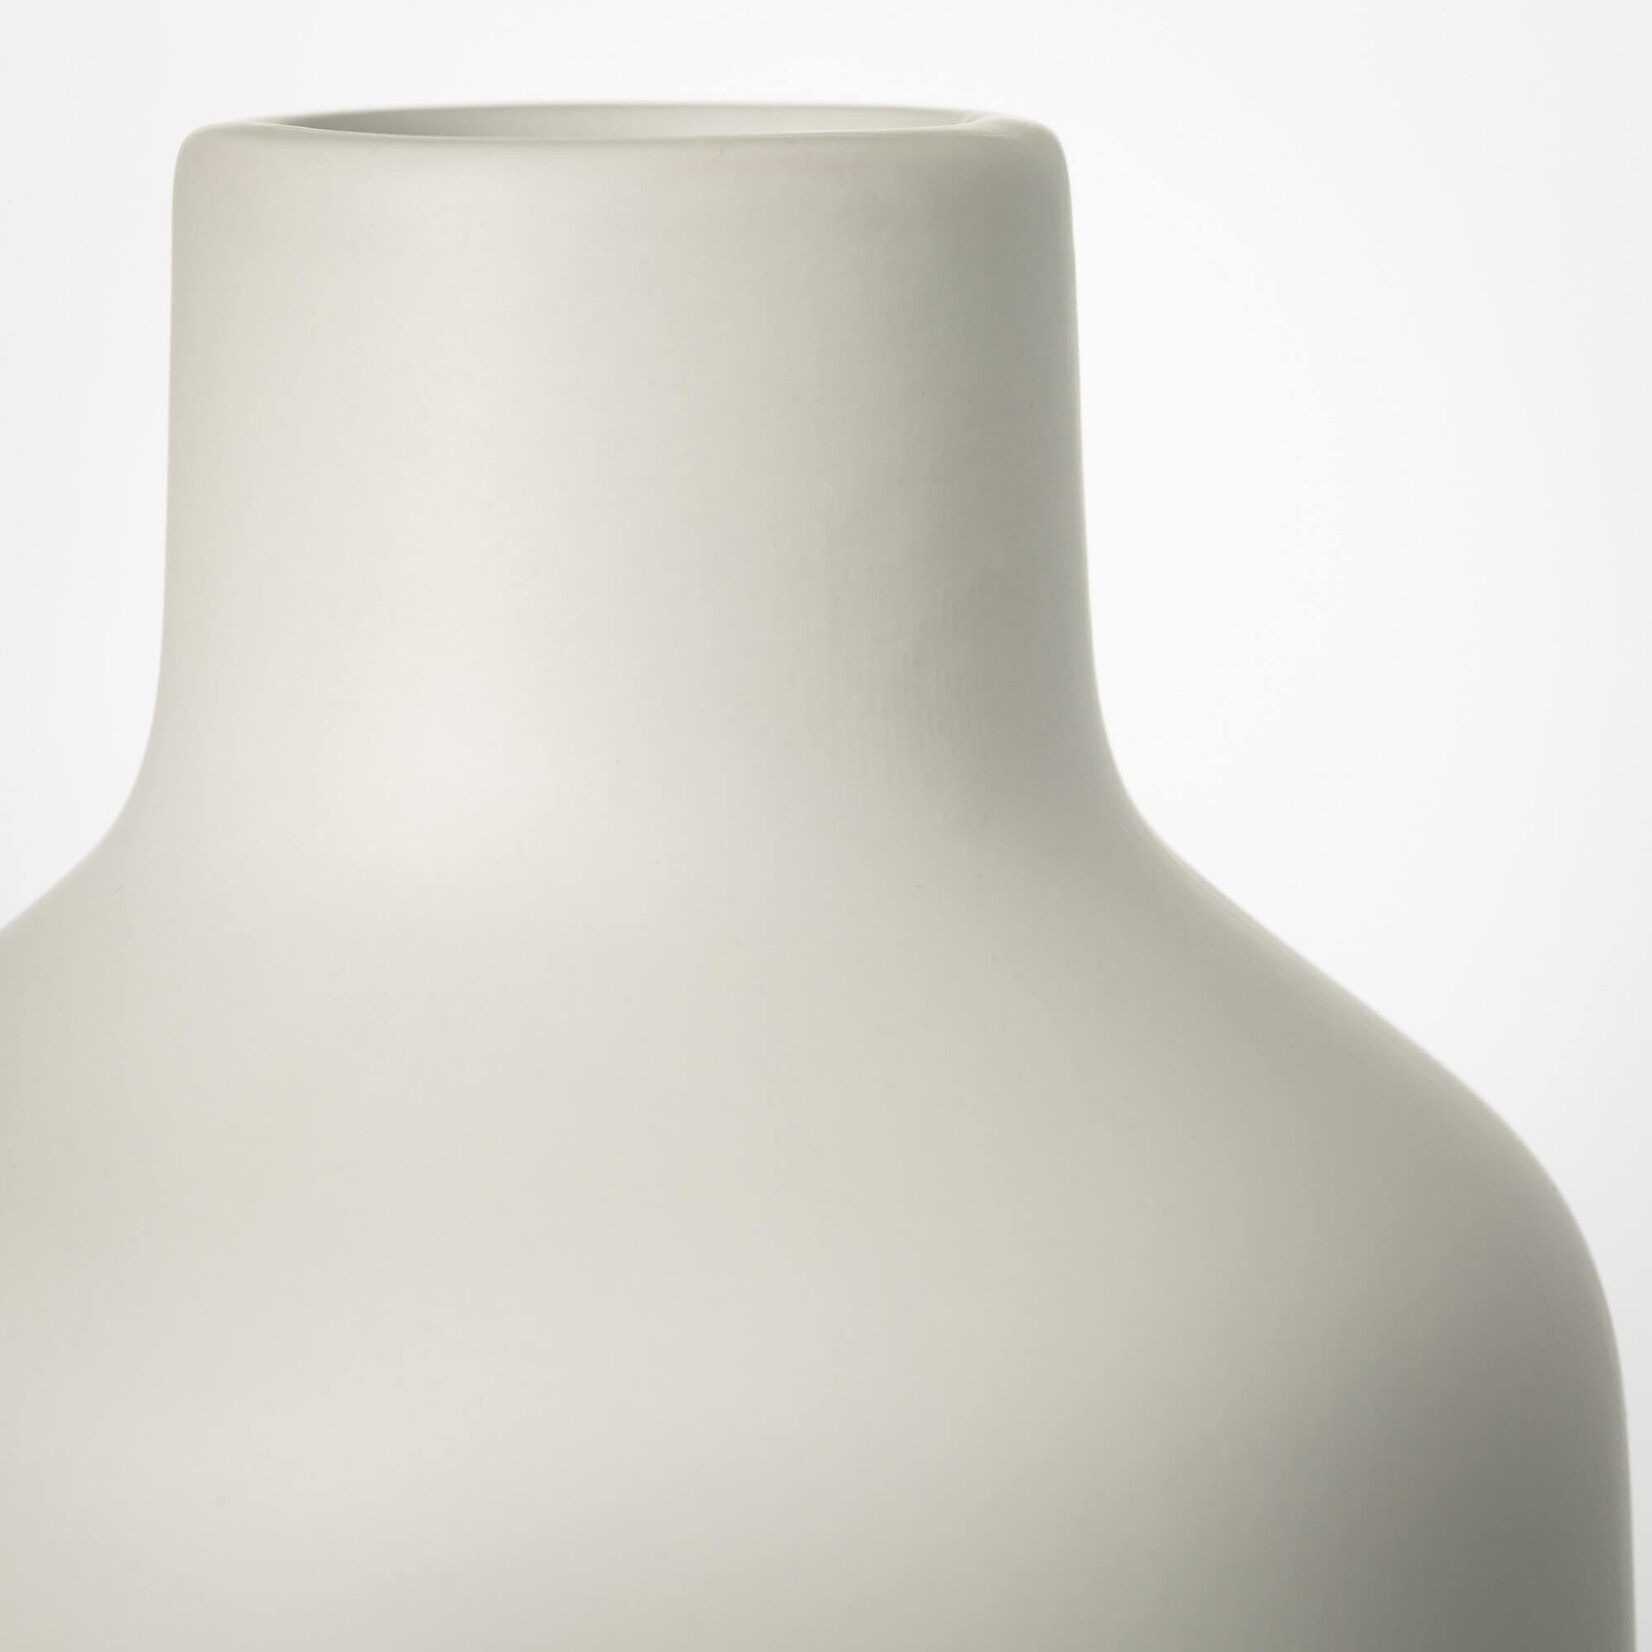 Matte White Bottle Vase, 11"